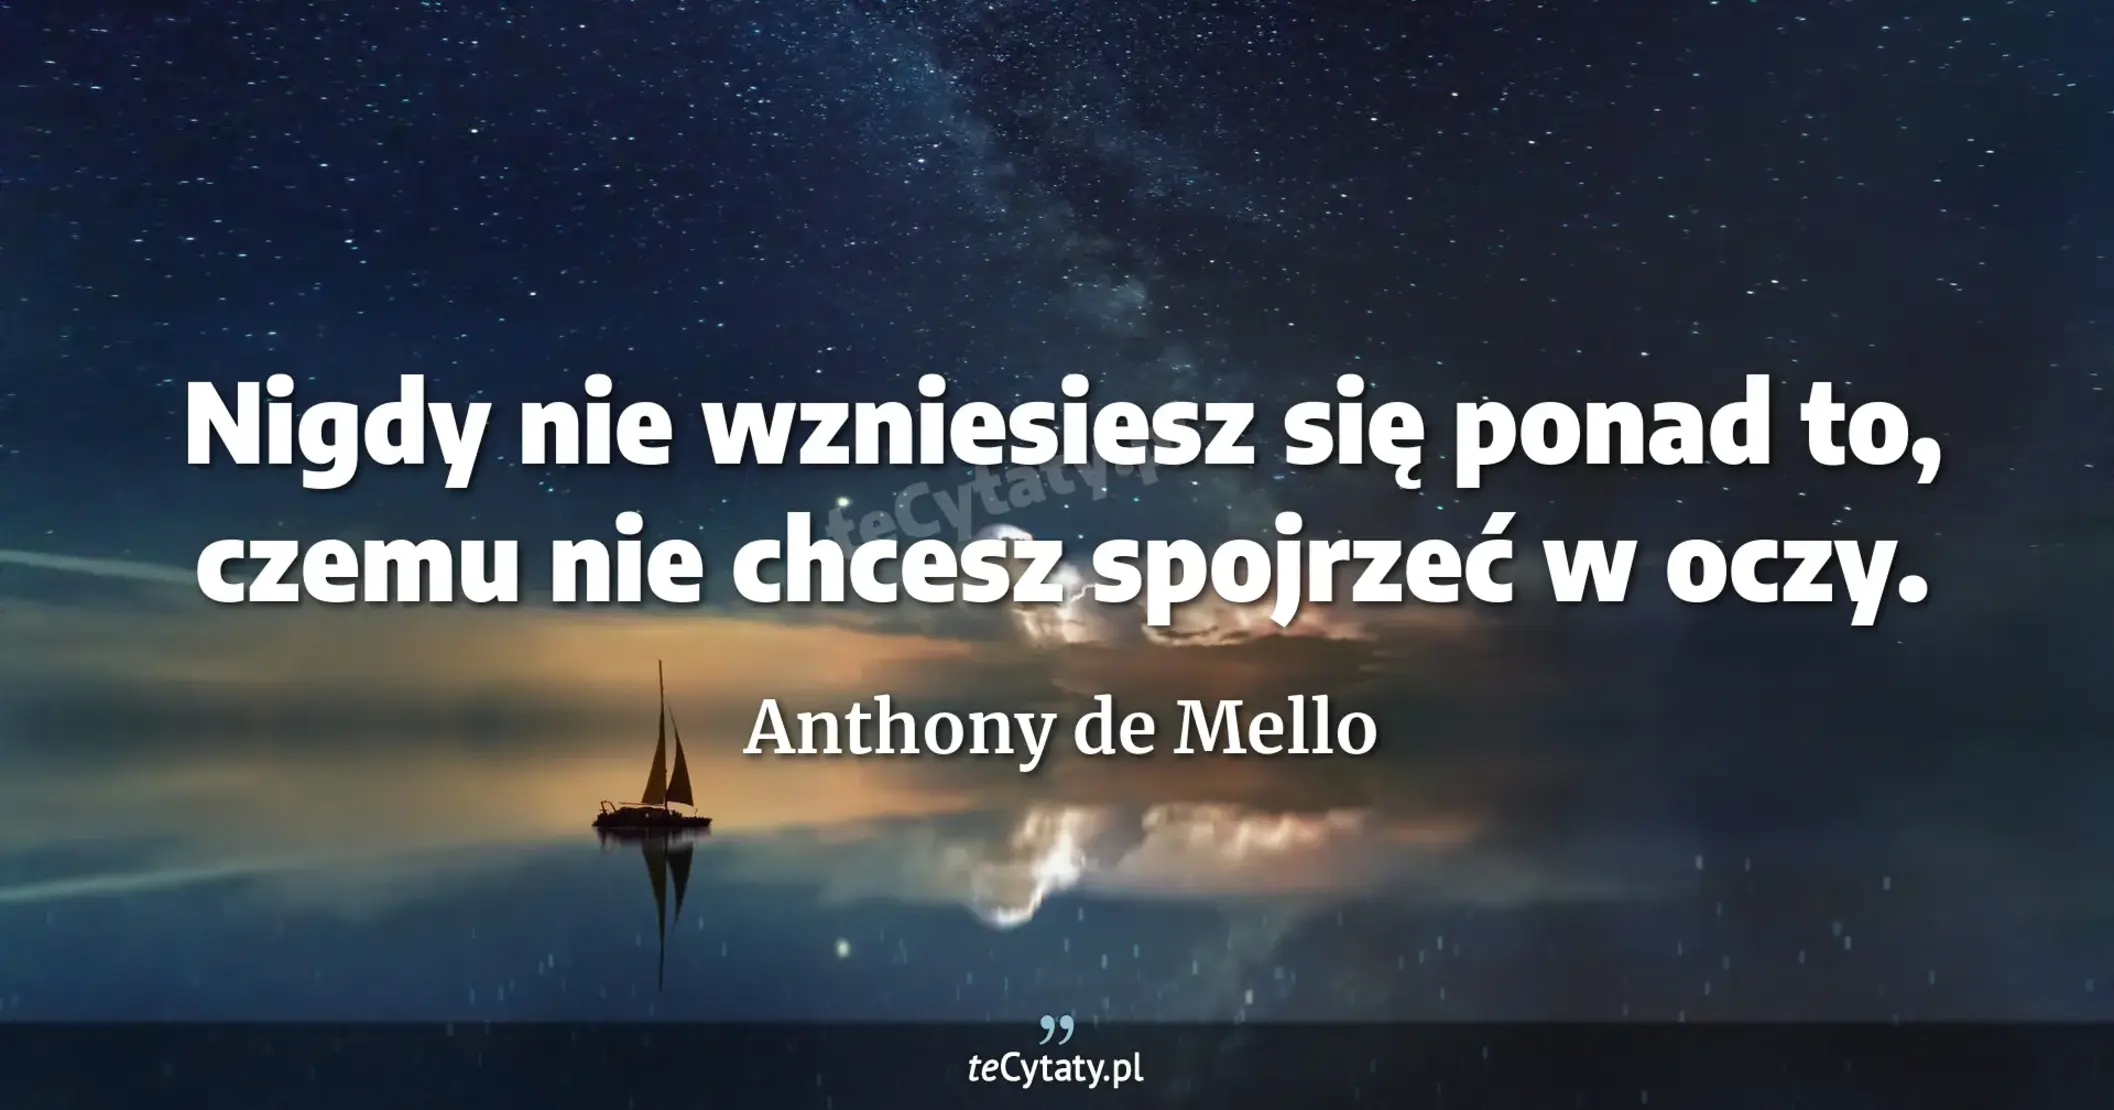 Nigdy nie wzniesiesz się ponad to, czemu nie chcesz spojrzeć w oczy. - Anthony de Mello